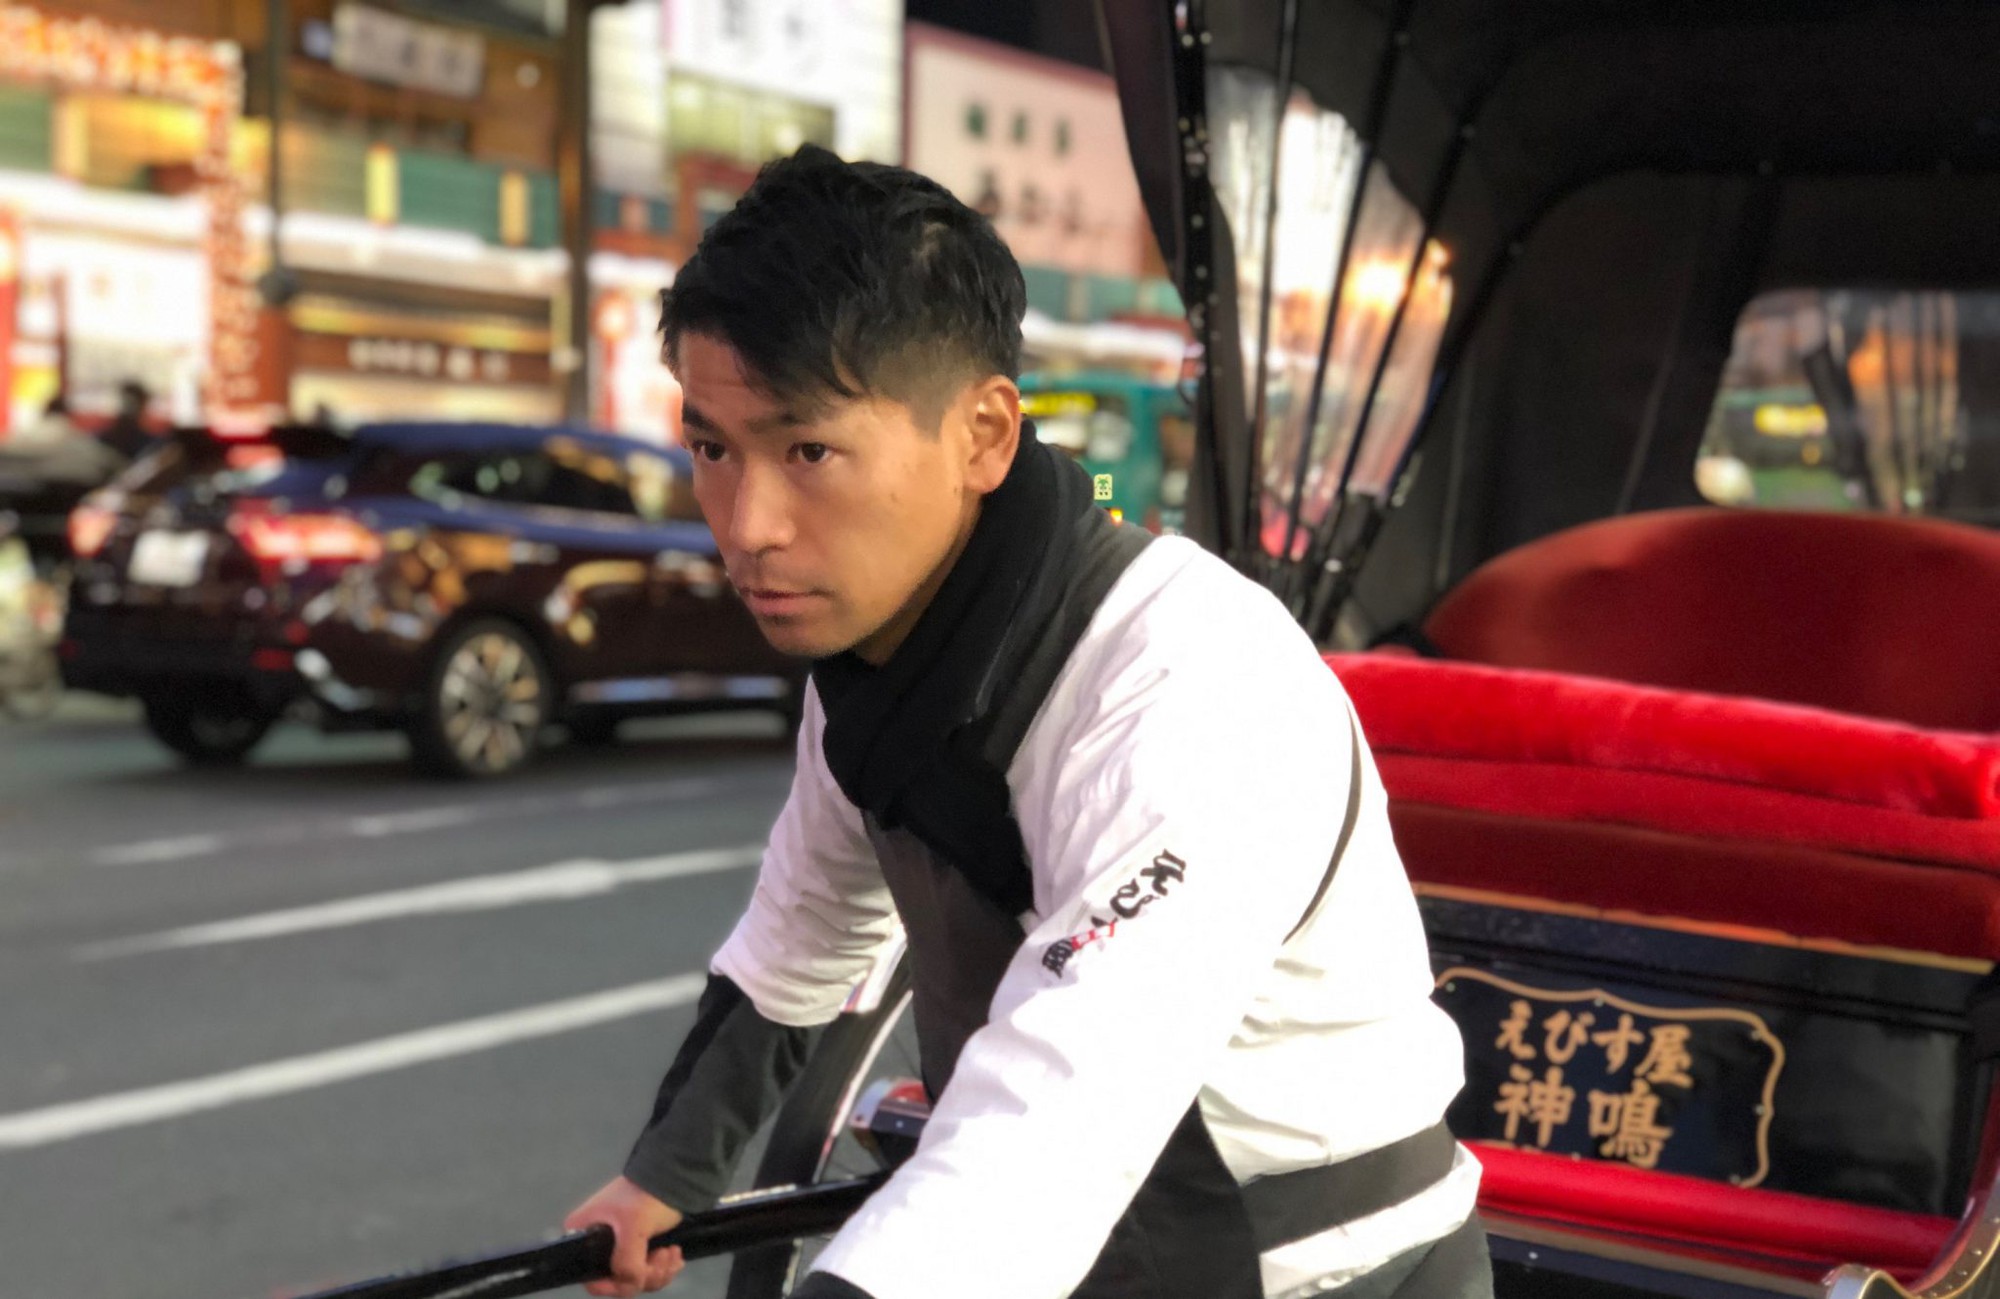 Phỏng vấn người kéo xe trên đường phố Tokyo: Công việc vất vả nhưng thú vị bất ngờ - Ảnh 6.